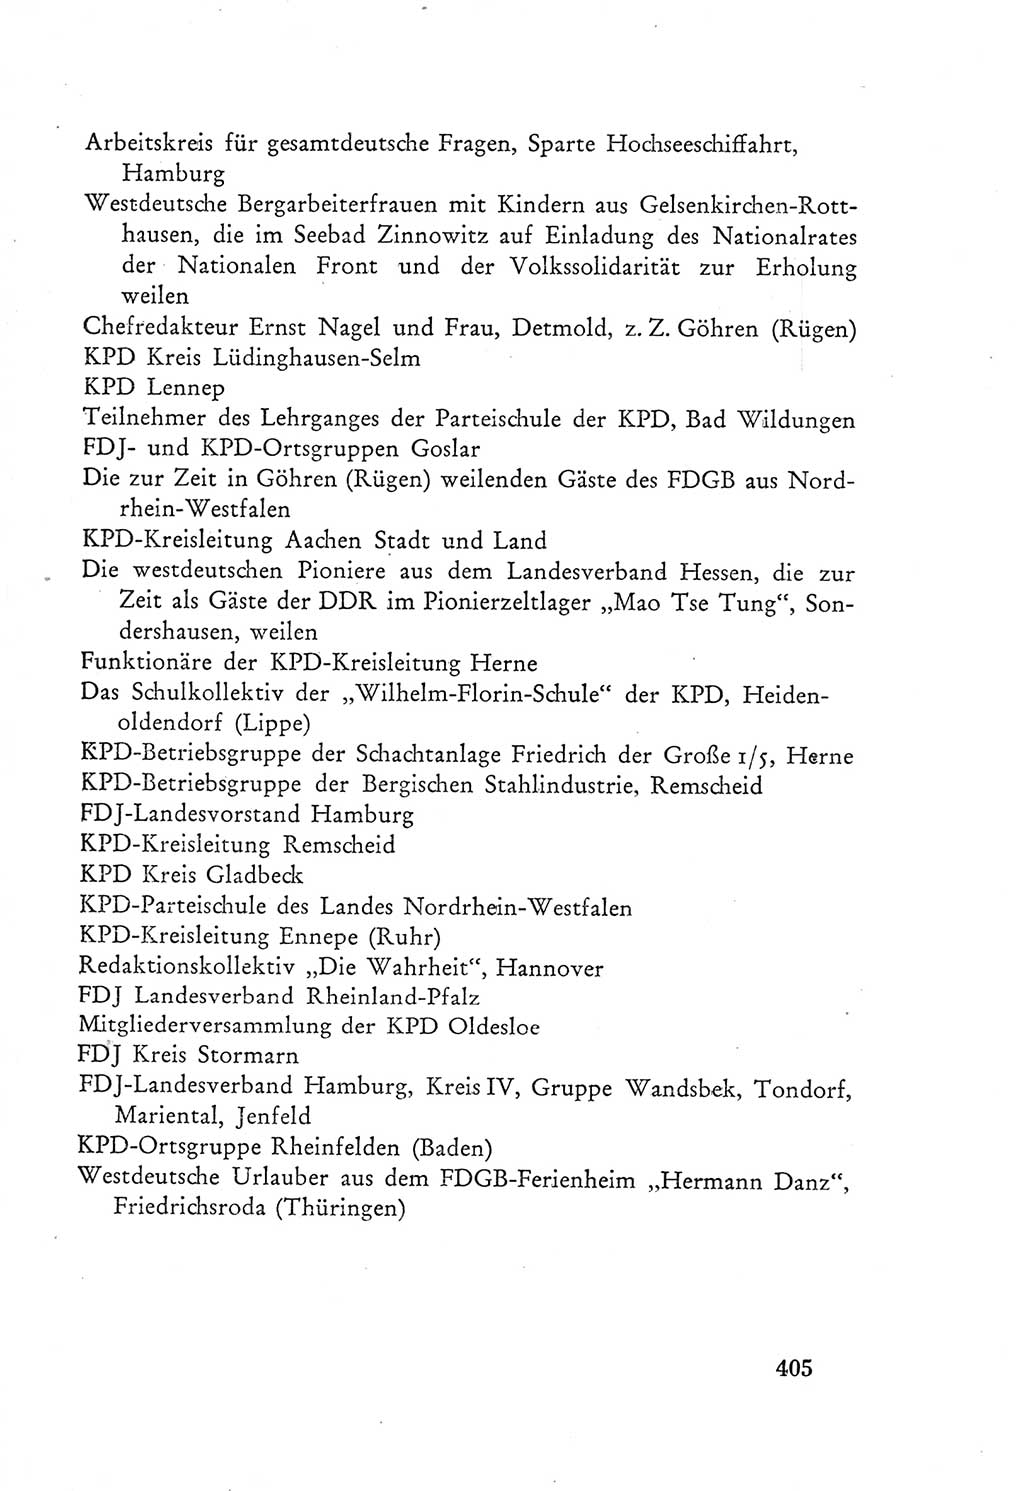 Protokoll der Verhandlungen des Ⅲ. Parteitages der Sozialistischen Einheitspartei Deutschlands (SED) [Deutsche Demokratische Republik (DDR)] 1950, Band 2, Seite 405 (Prot. Verh. Ⅲ. PT SED DDR 1950, Bd. 2, S. 405)